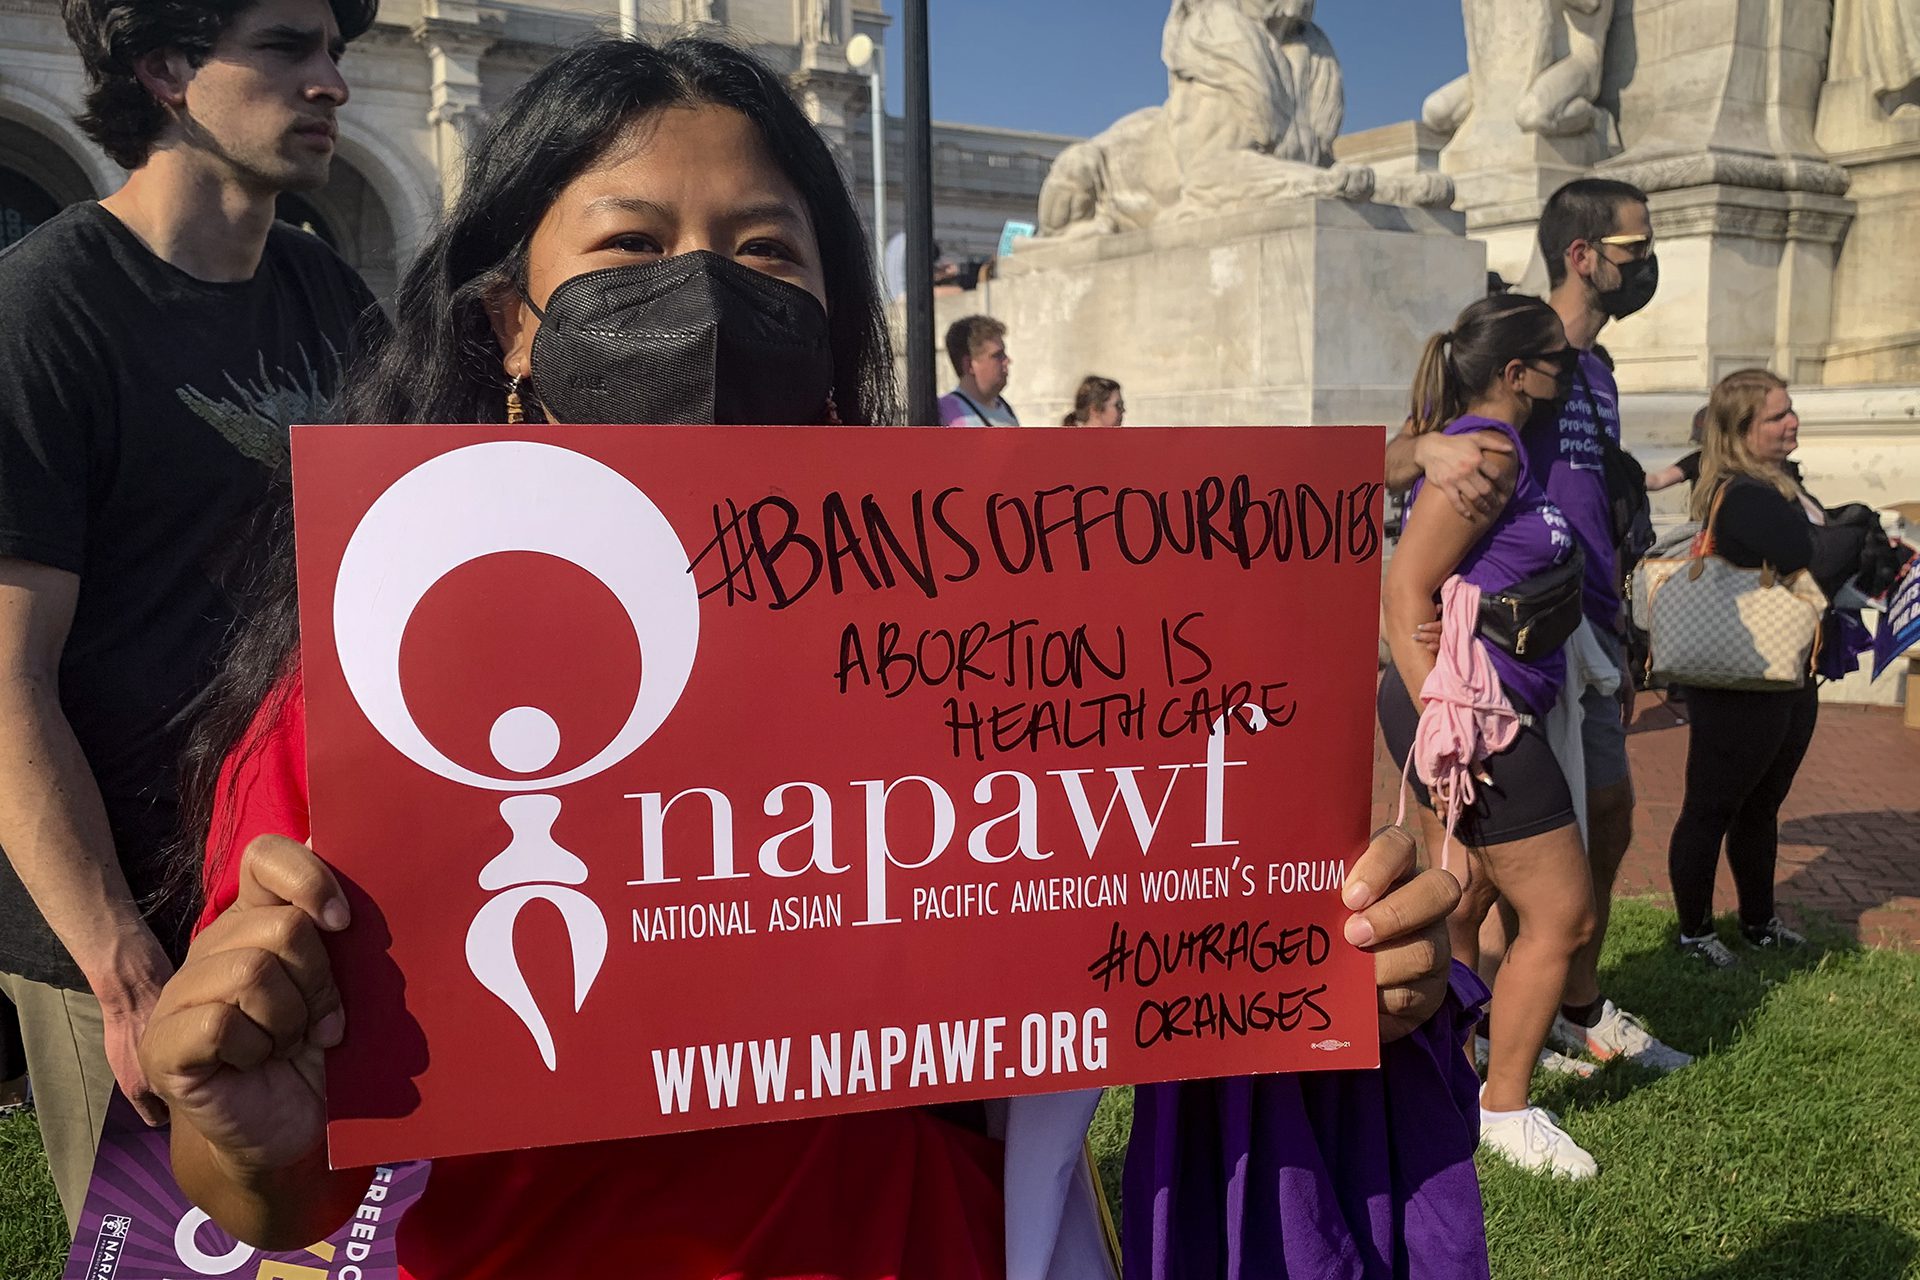 May Thach tient une pancarte rouge sur laquelle on peut lire &quot;#bansoffourbodies&quot; &quot;abortion is heathcare&quot; &quot;napawf&quot;.